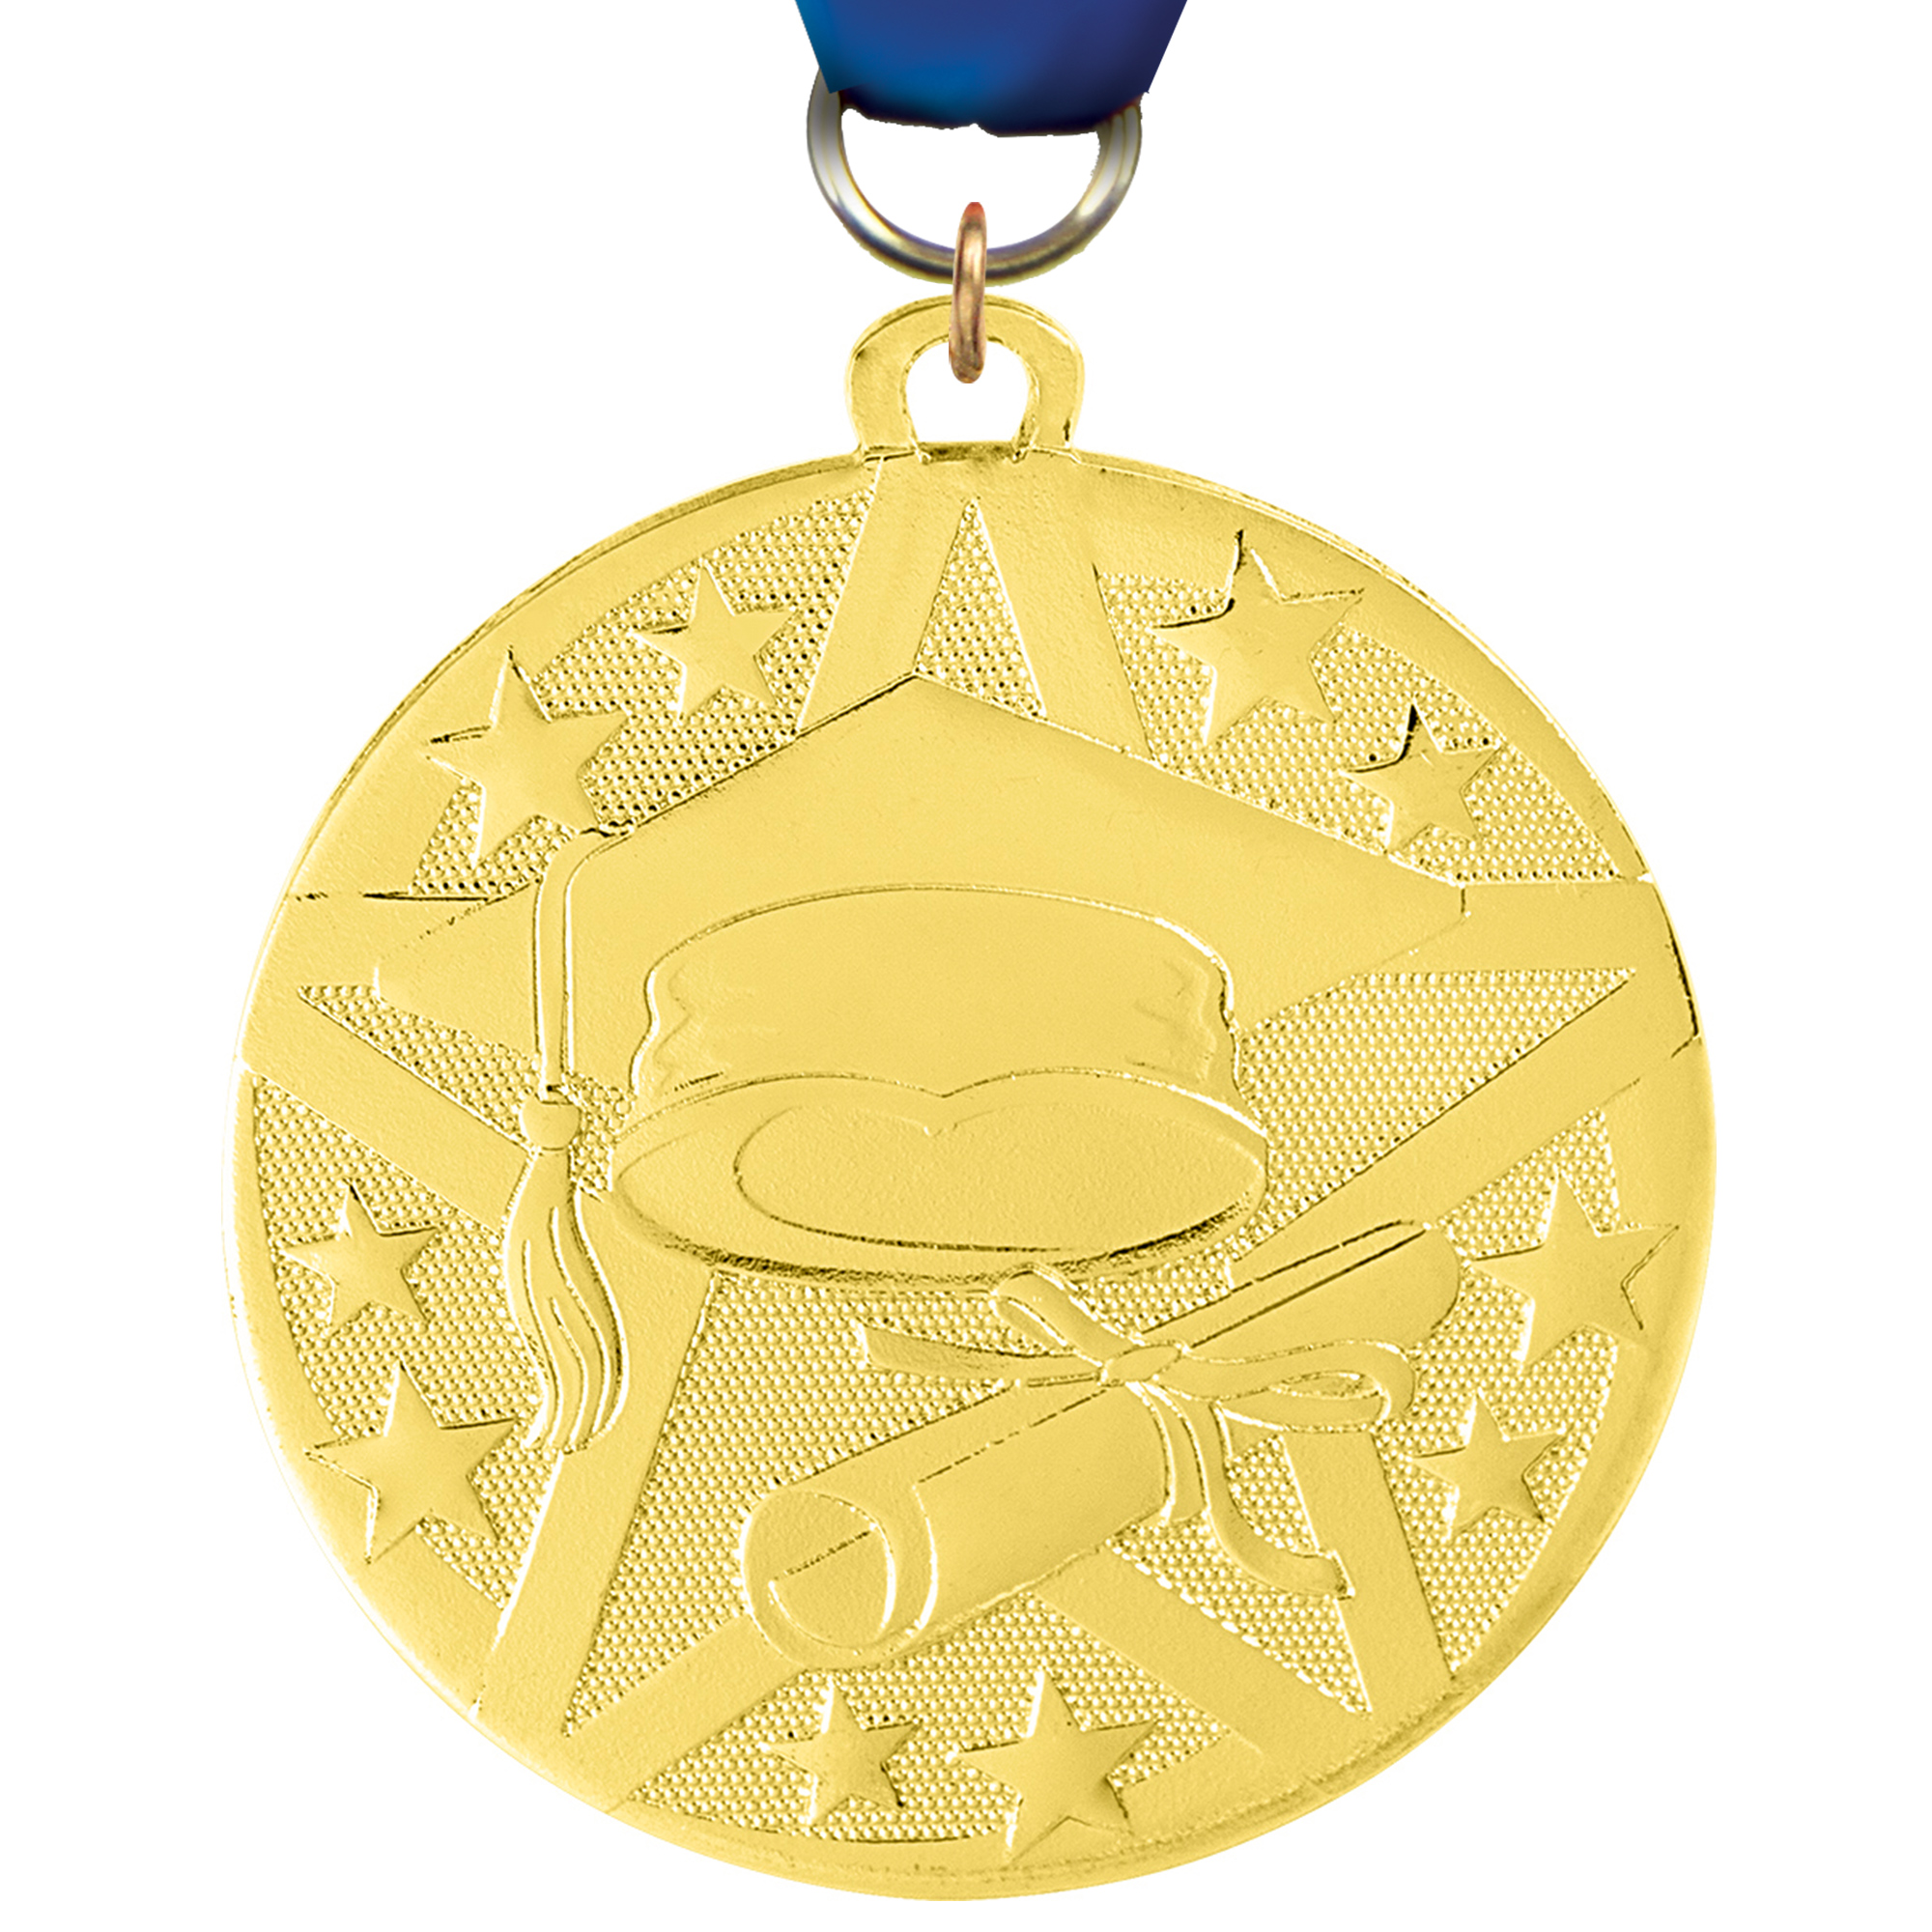 Graduate Bright Superstar Medal